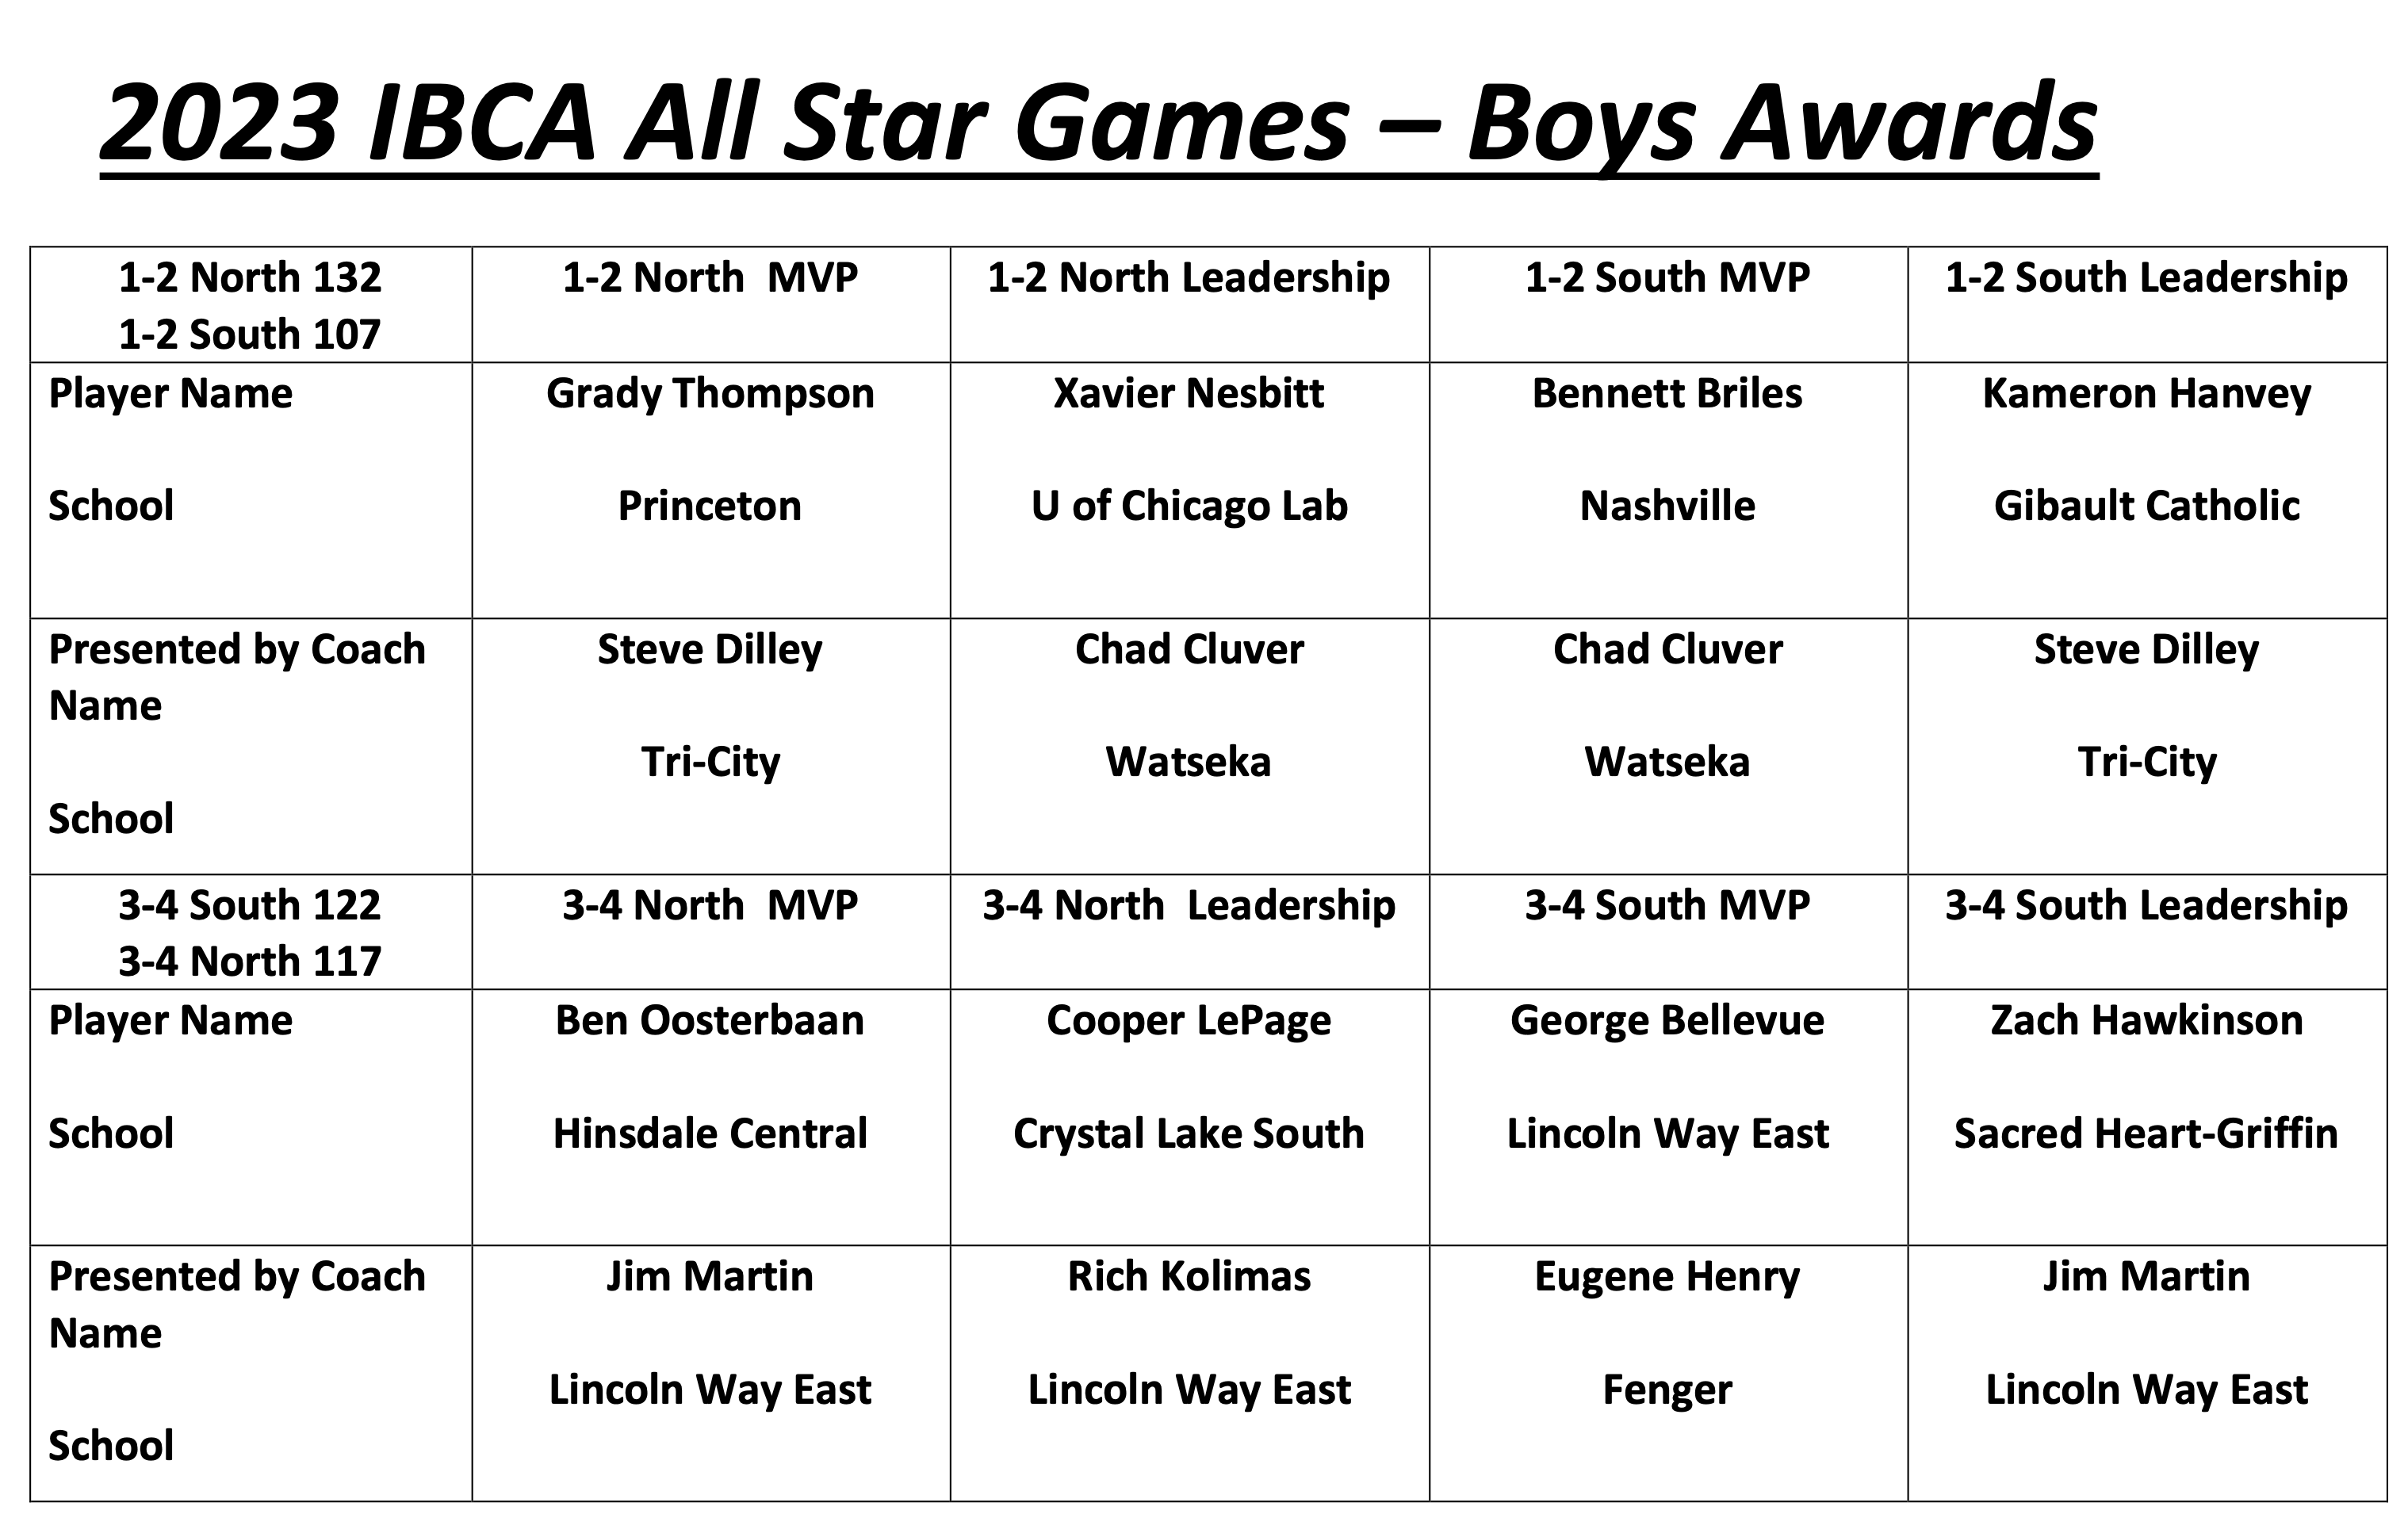 IBCA Awards Boys 2023 - All Star Games